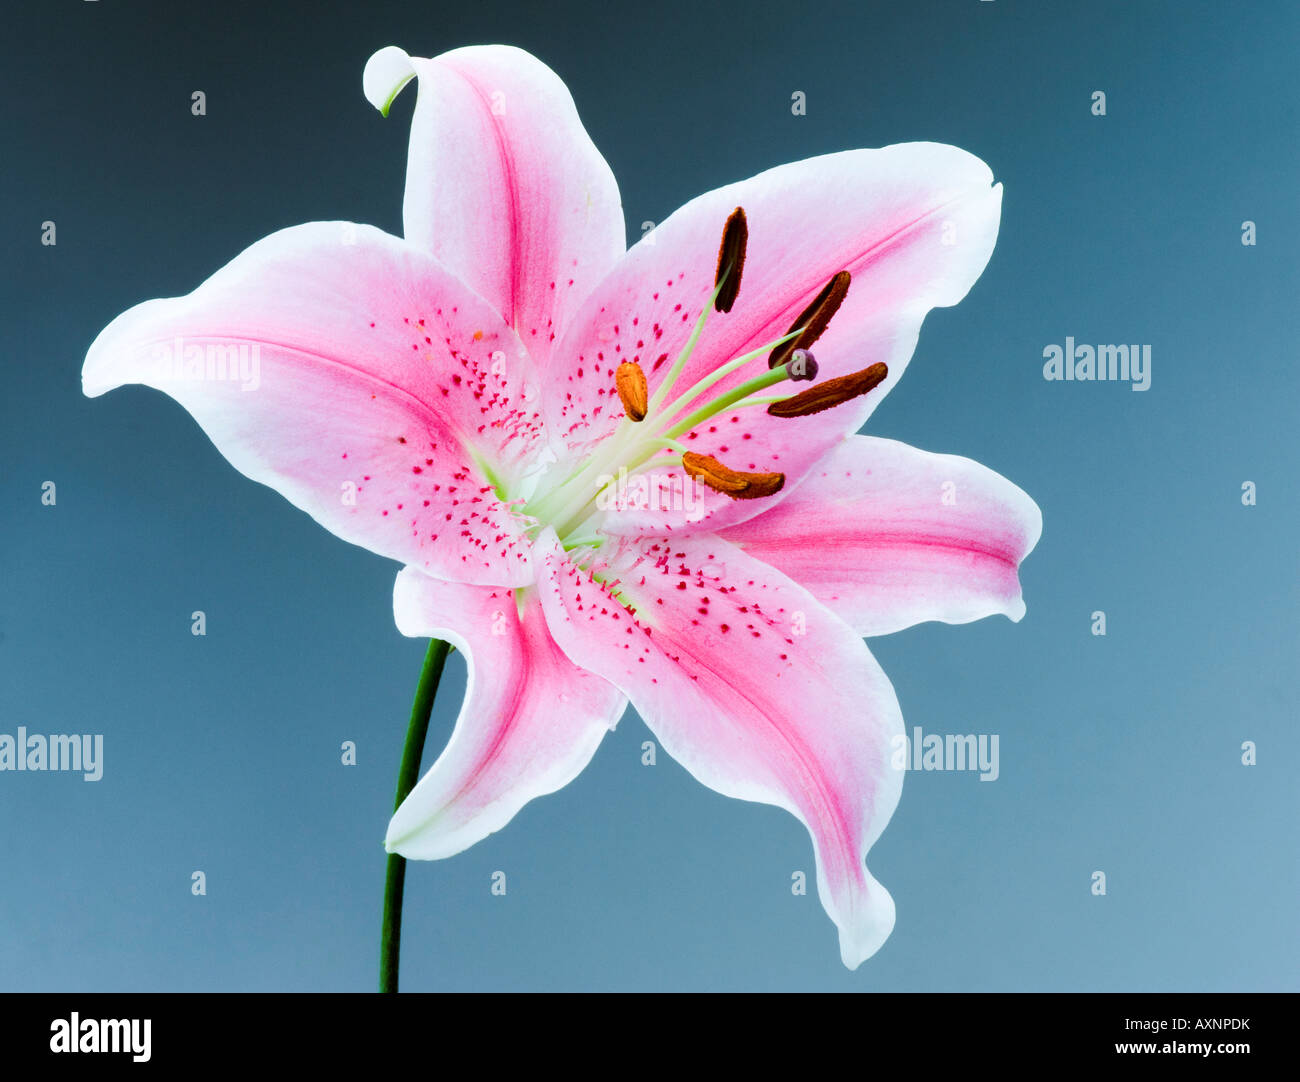 Seul Lily rose jolie beauté calme tranquillité paix sympathie souvenirs Banque D'Images